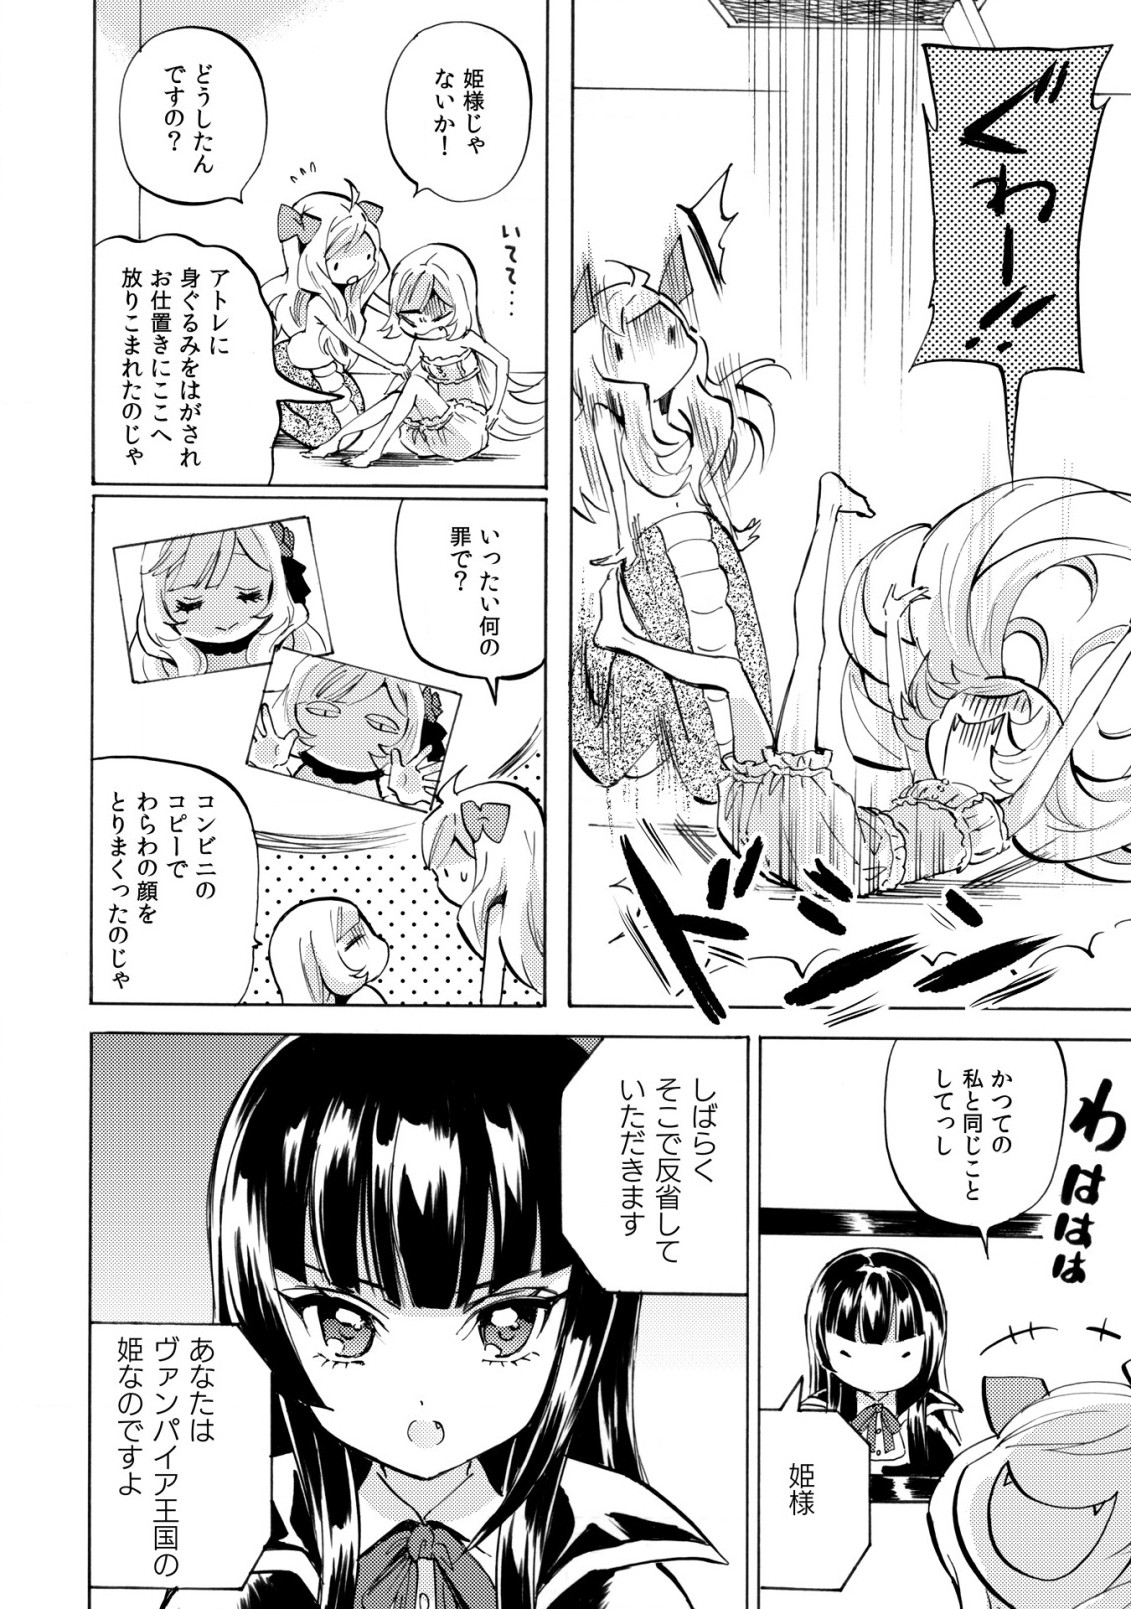 Jashin-chan Dropkick - Chapter 233 - Page 3